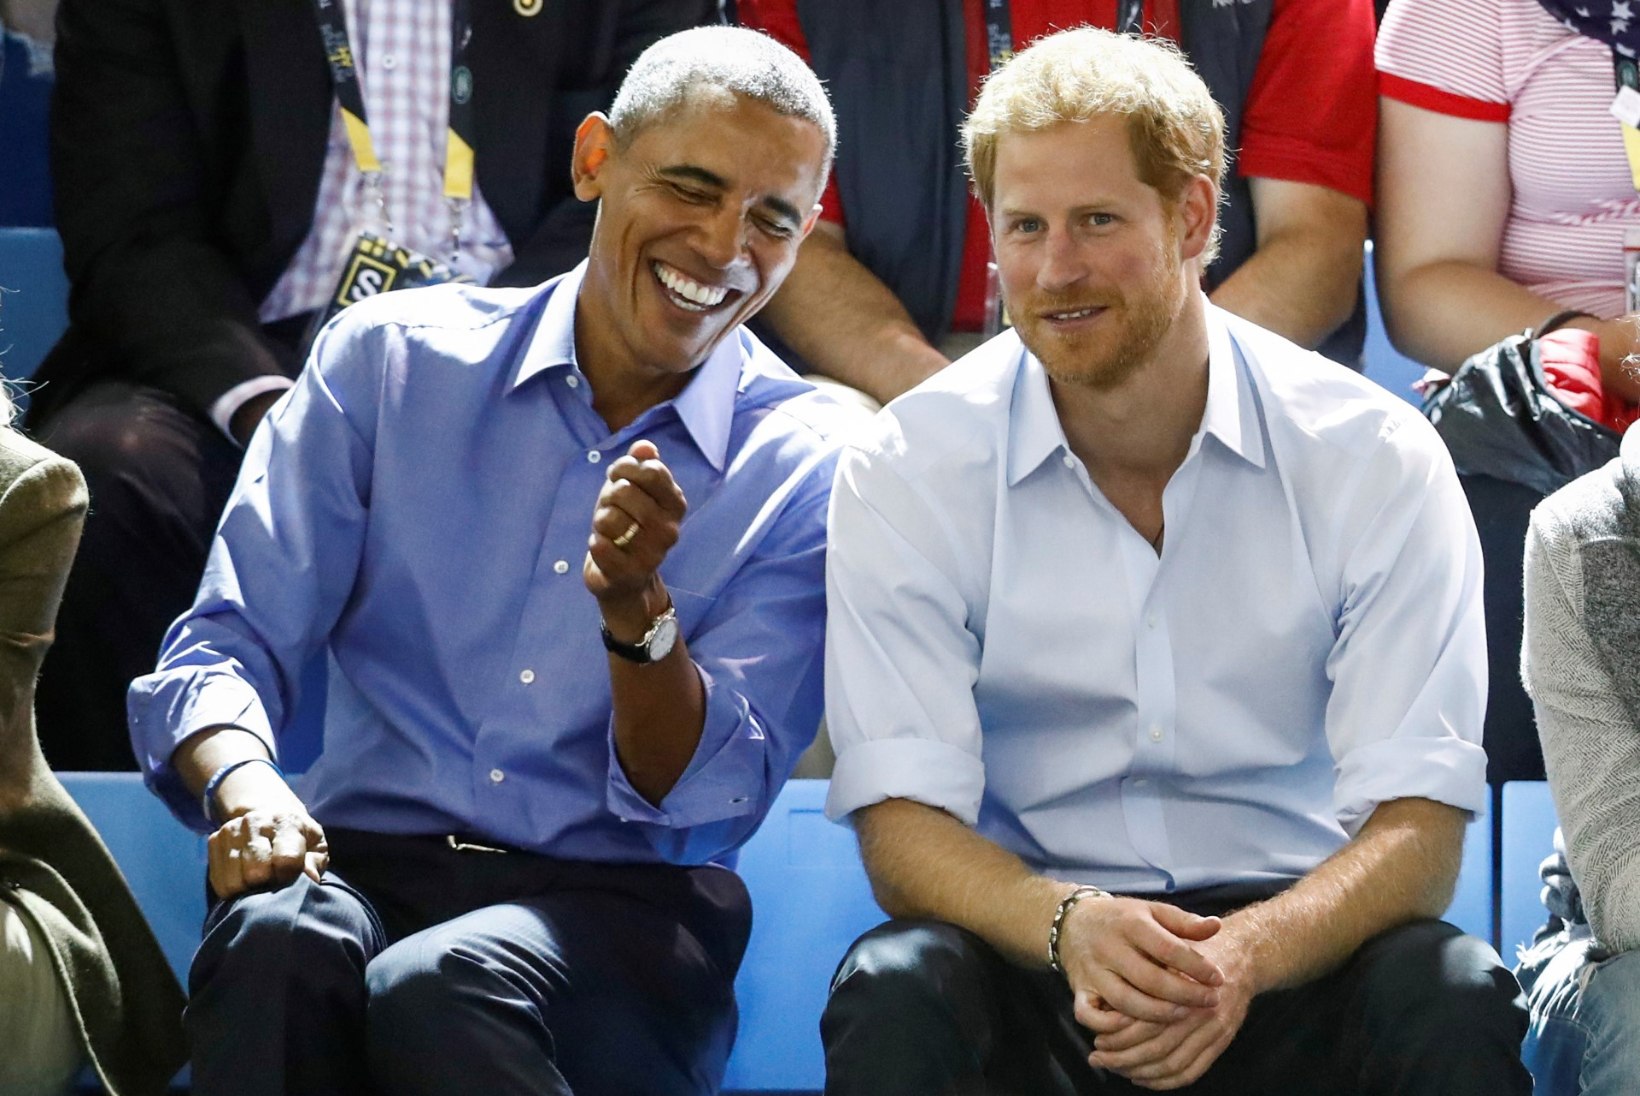 Miks prints Harry Obamasid oma pulma ei kutsu?